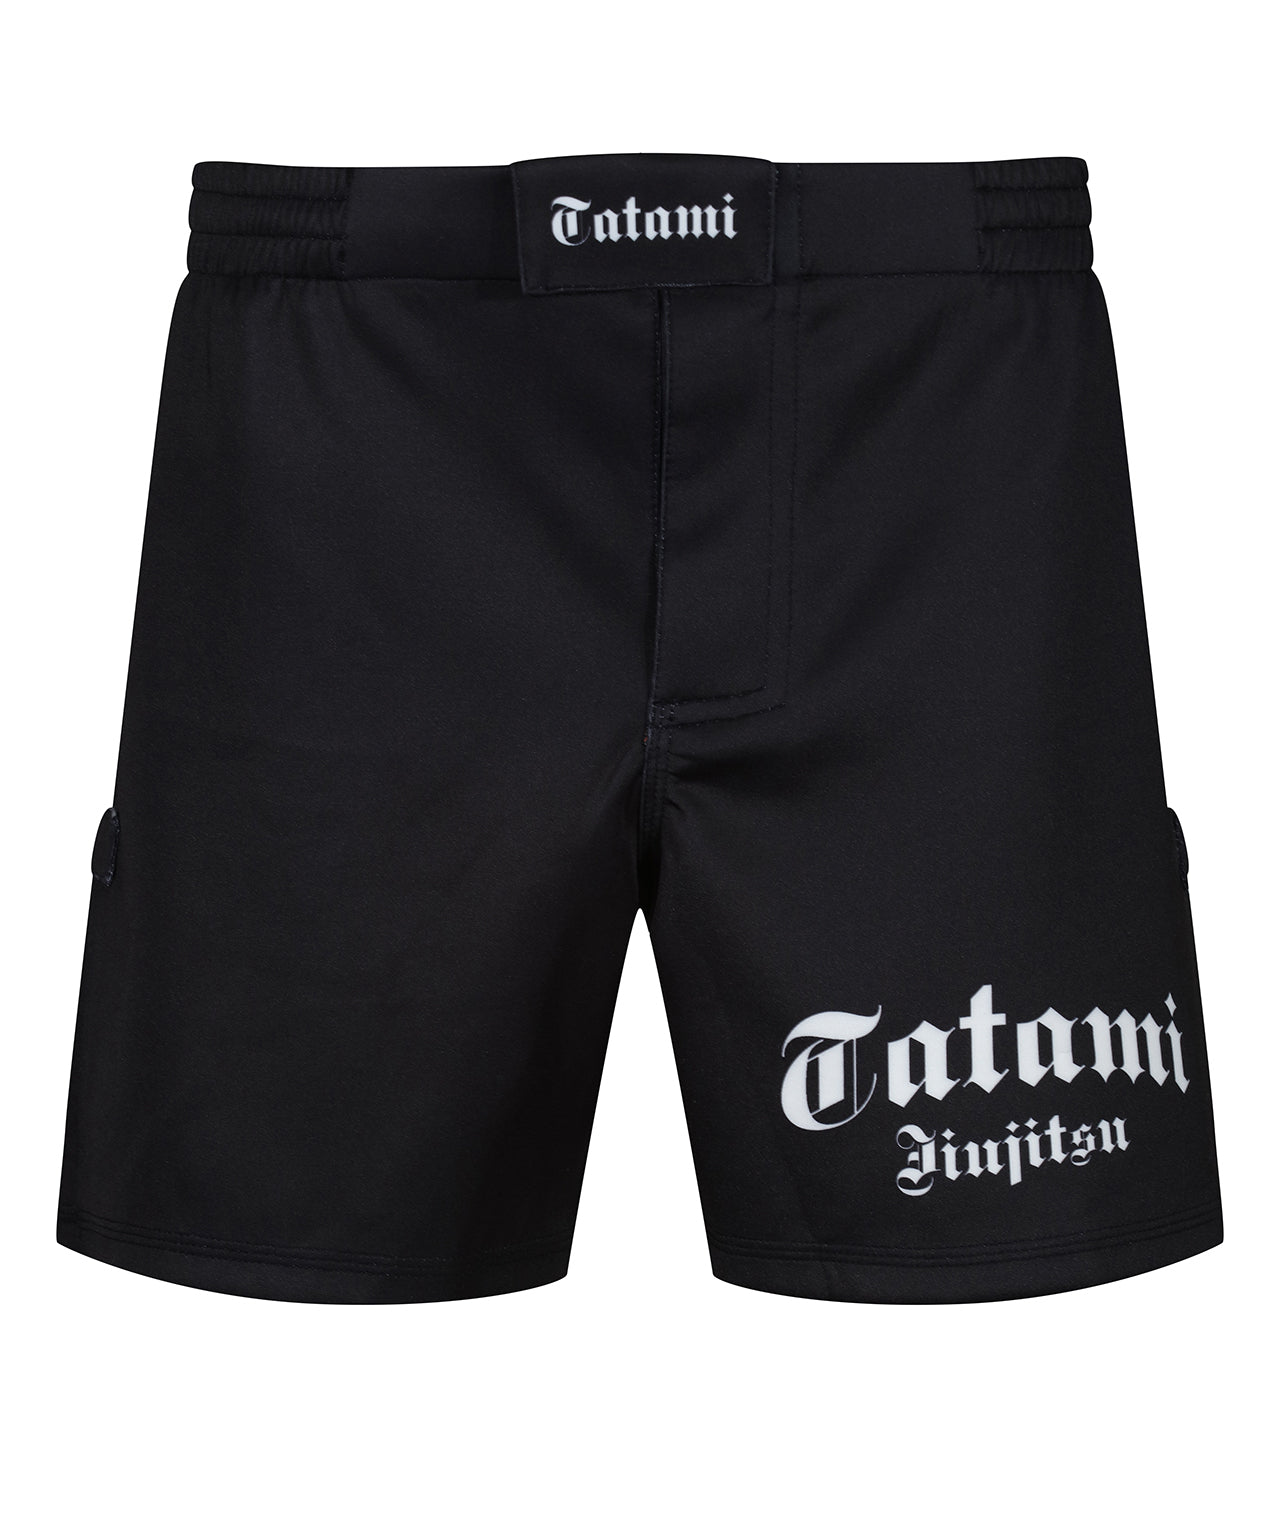 Tatami Gothic Grappling Shorts